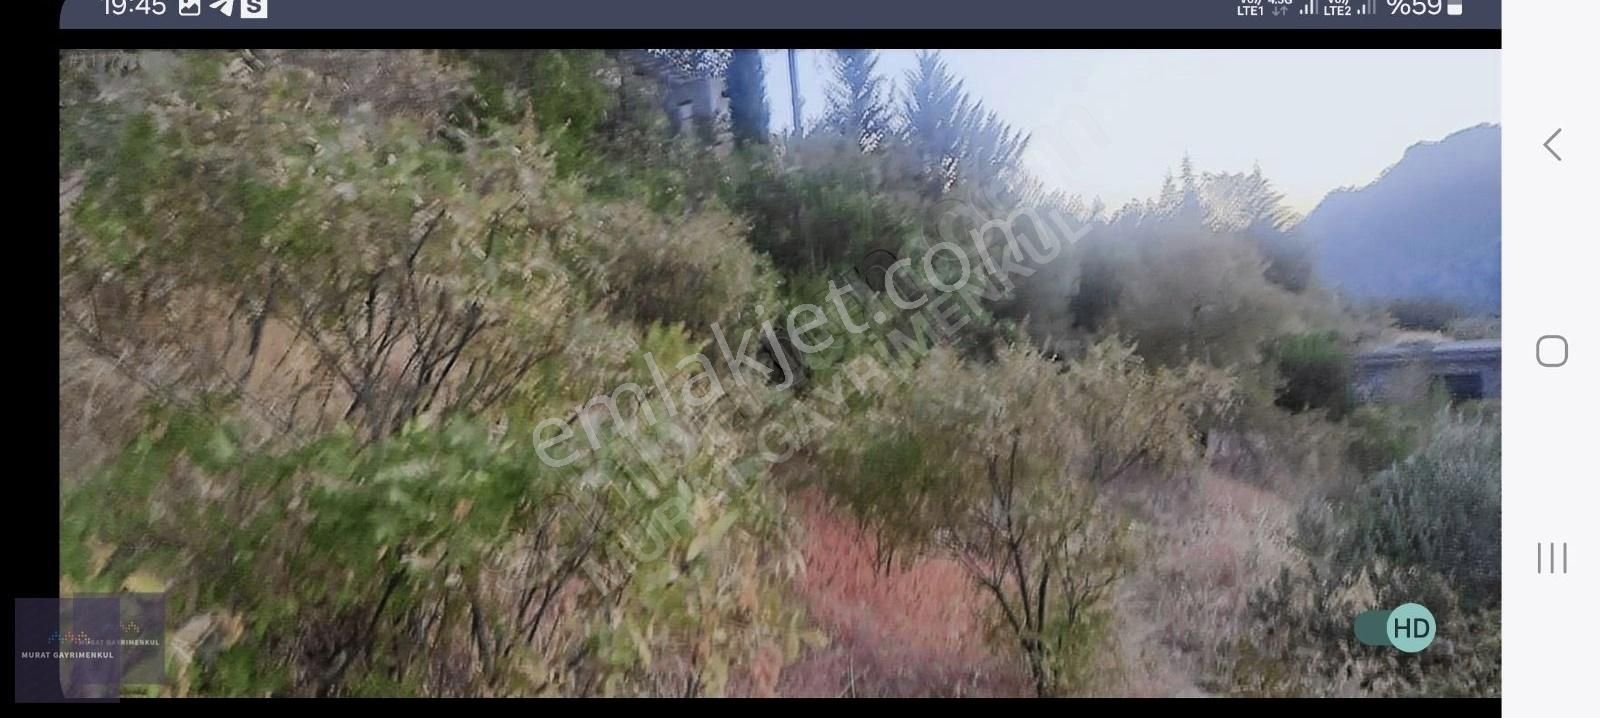 Onikişubat Sarıçukur Satılık Bağ & Bahçe MURAT GAYRİMENKUL DEN BARAJ MANZARALI 2579m2 manzaralı